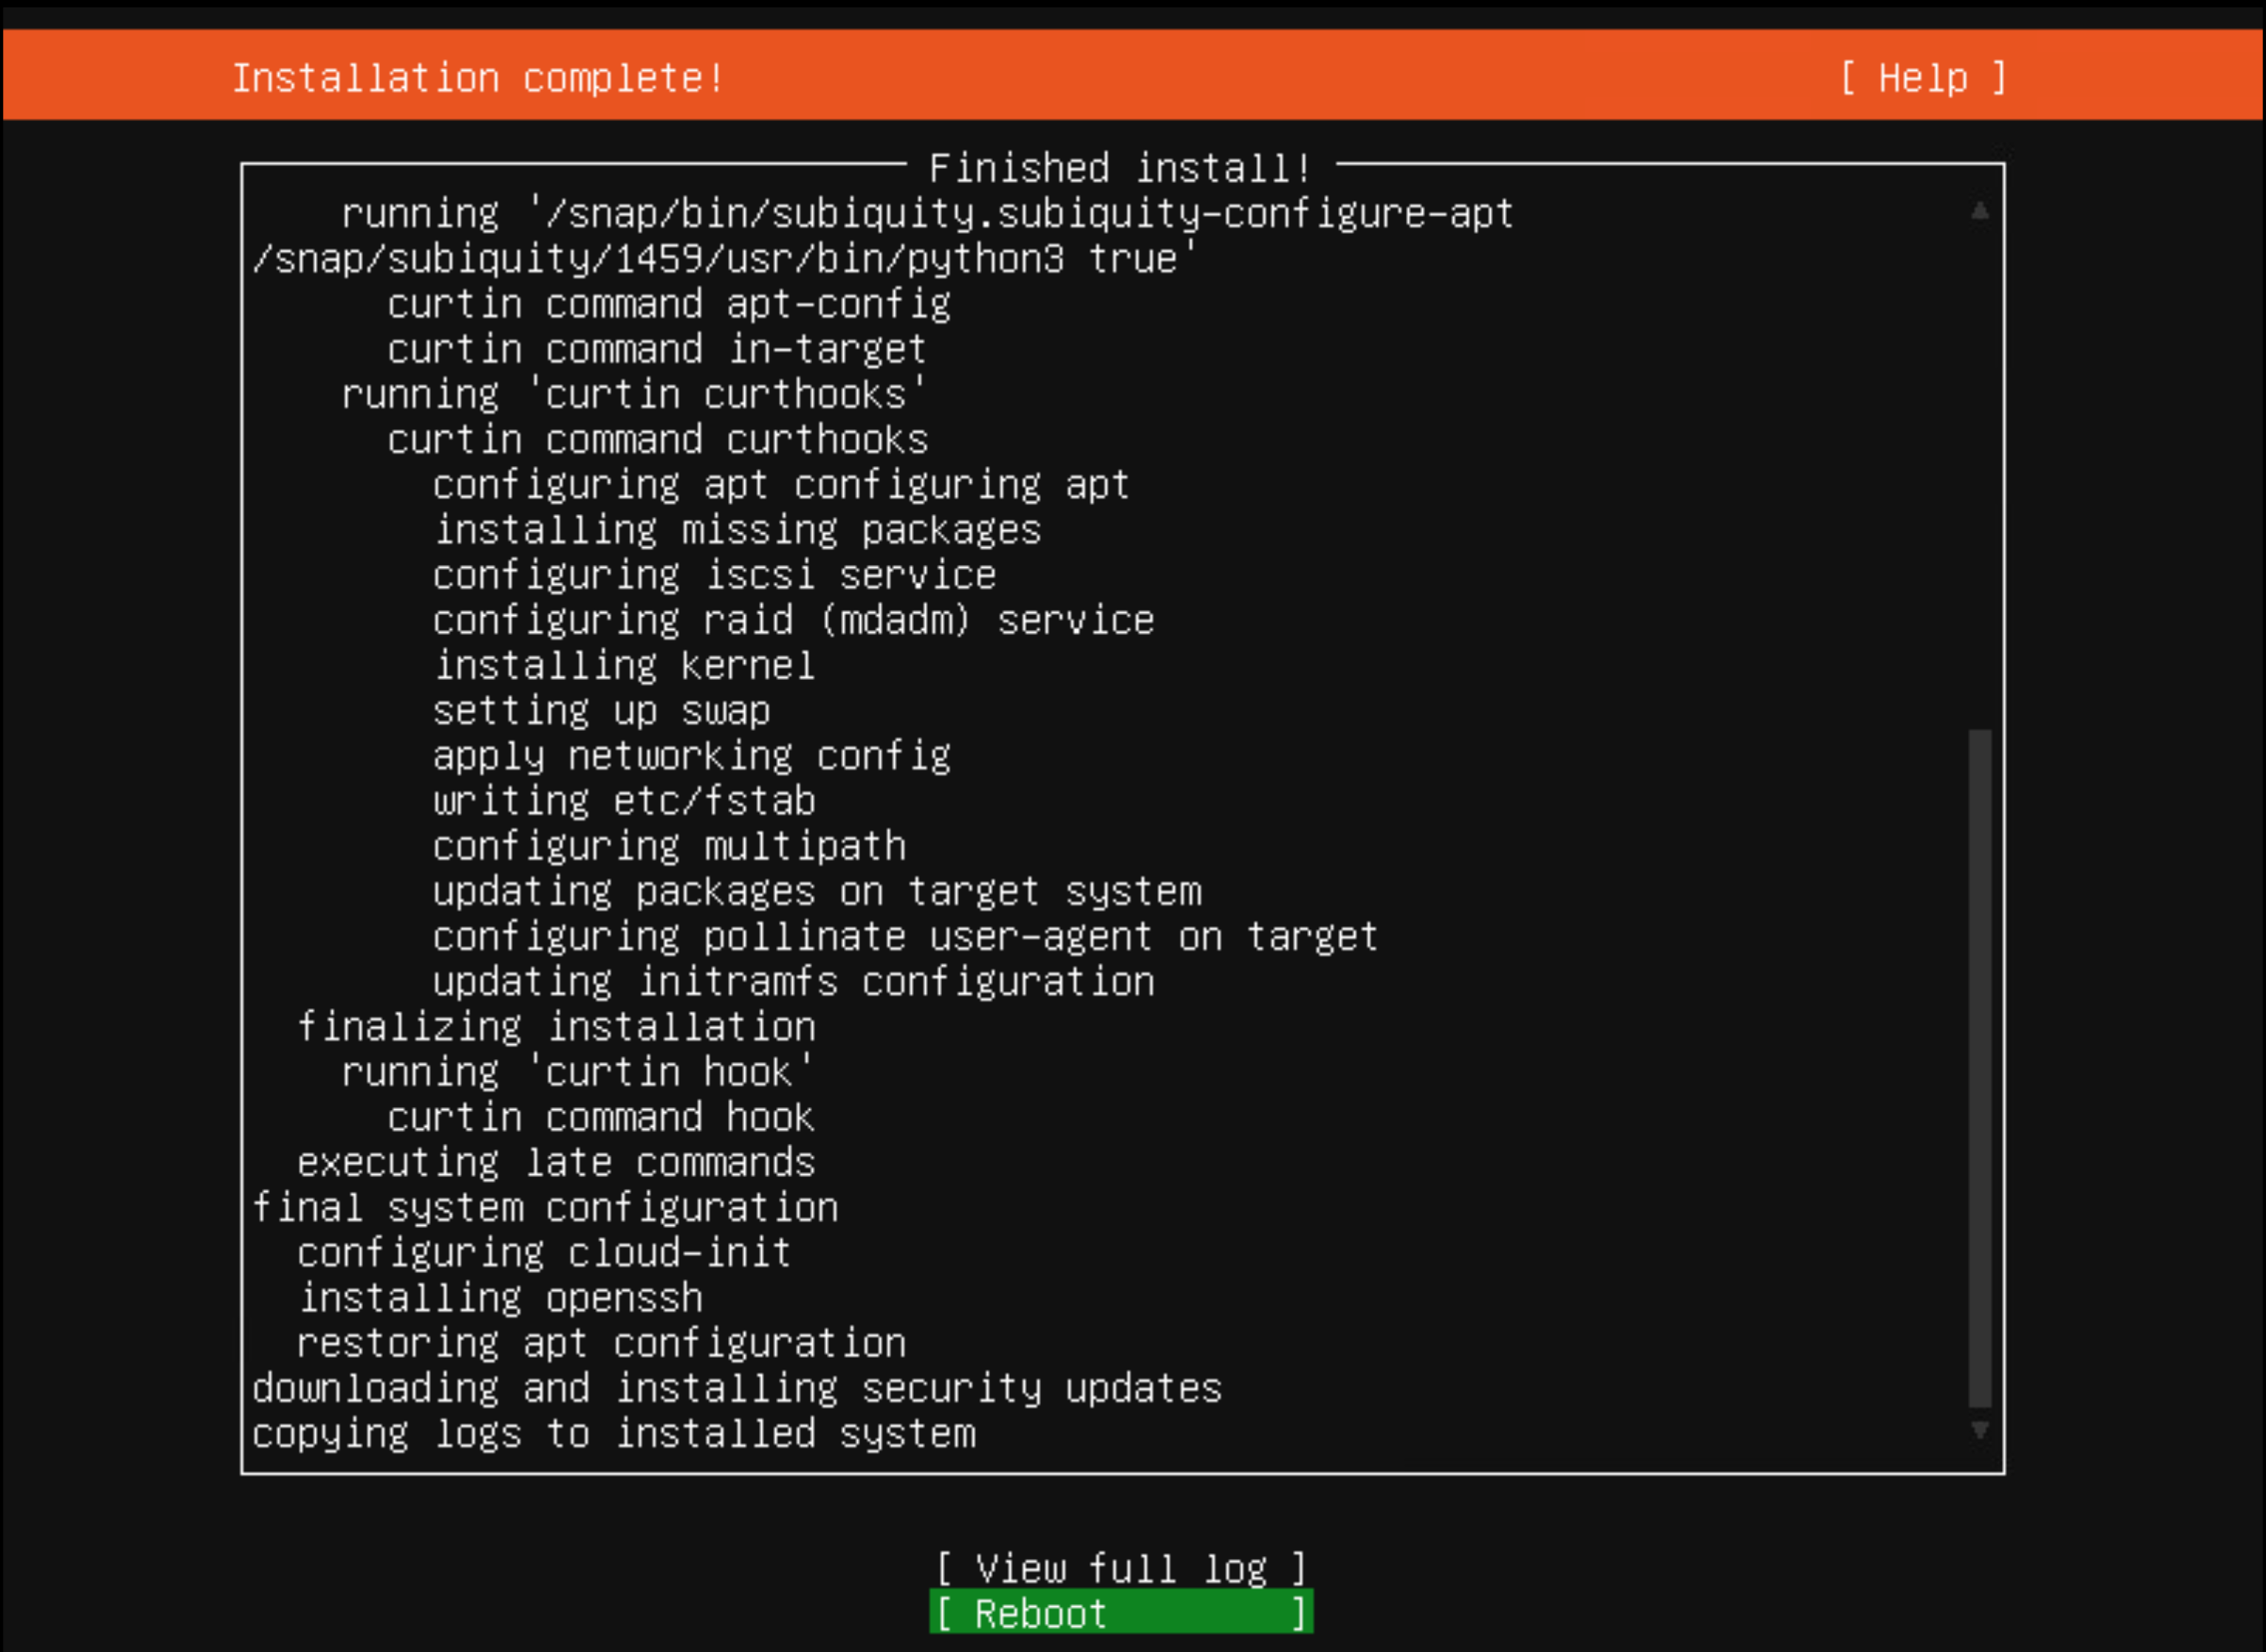 Negentiende schermopname van een Ubuntu-installatie.